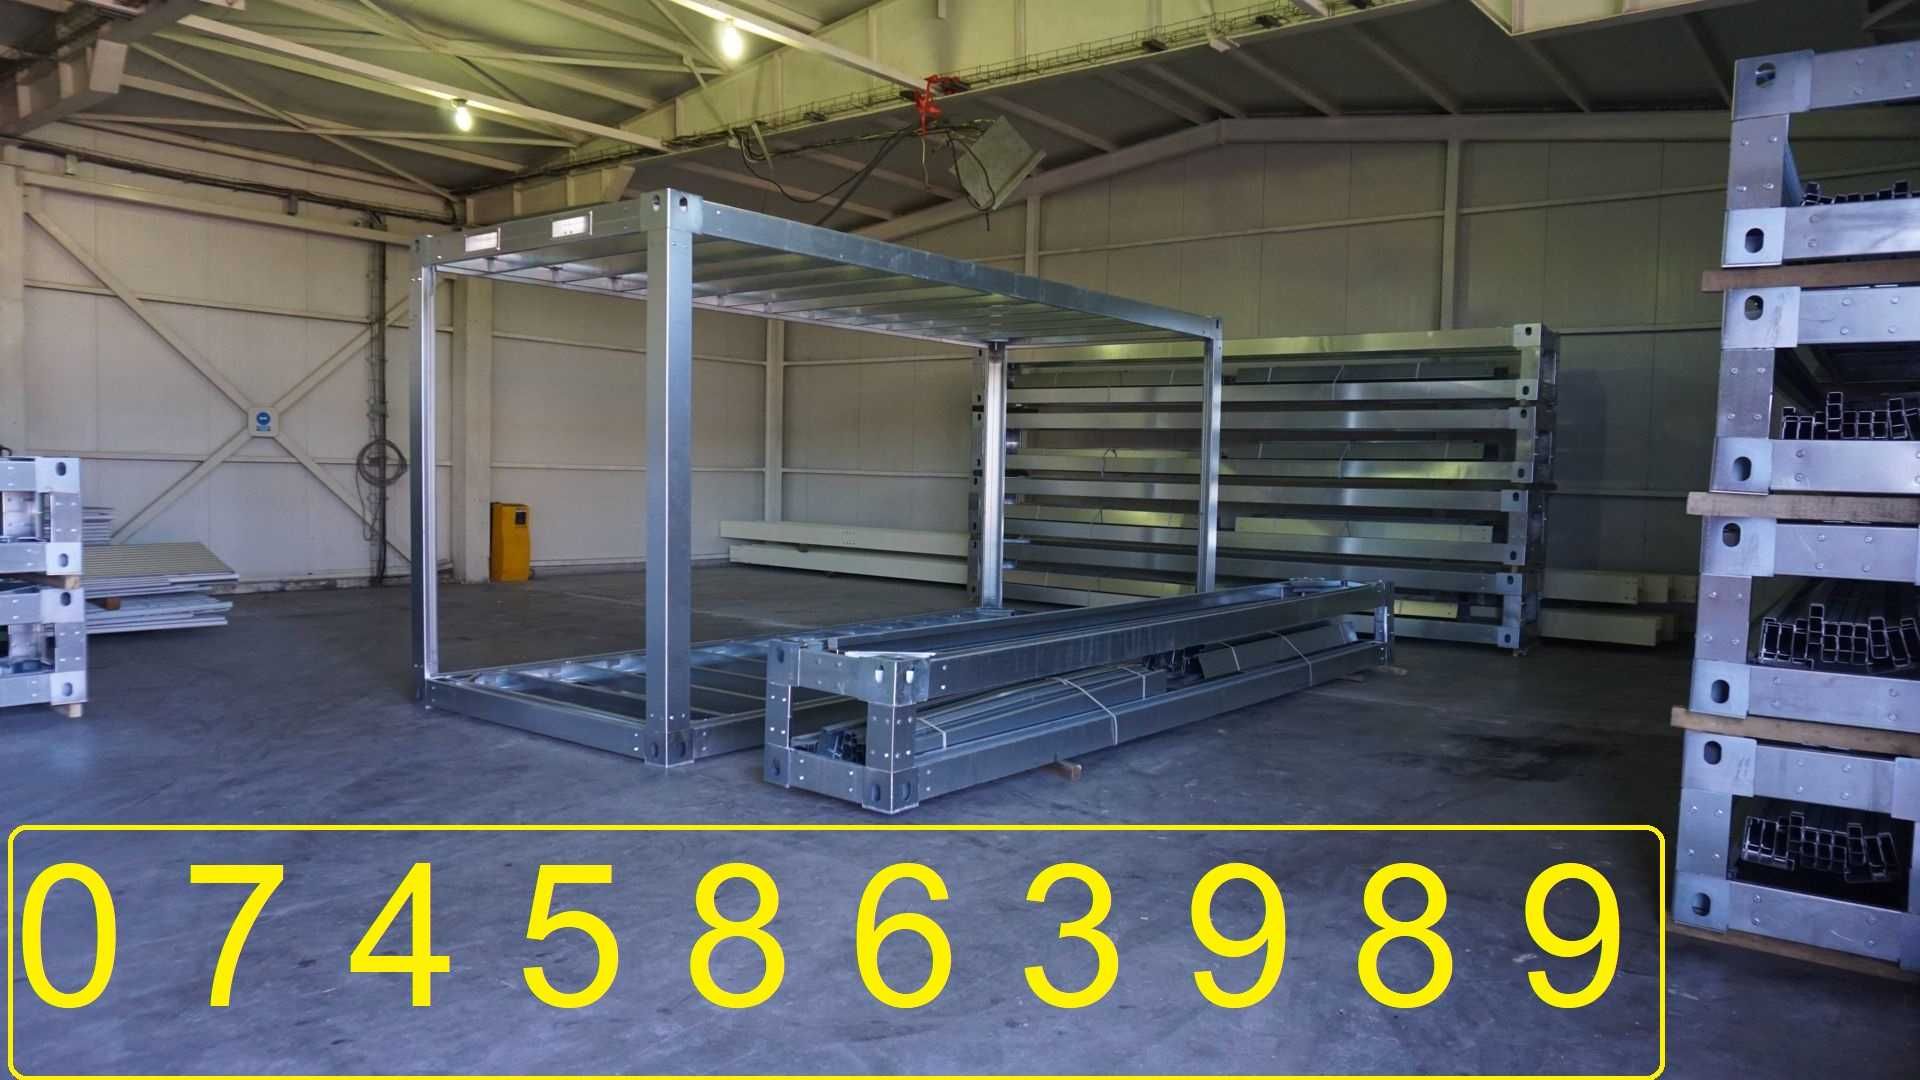 Structura modulara -STALPI DE 3 mm -6060X2438X2880 -pret de producator